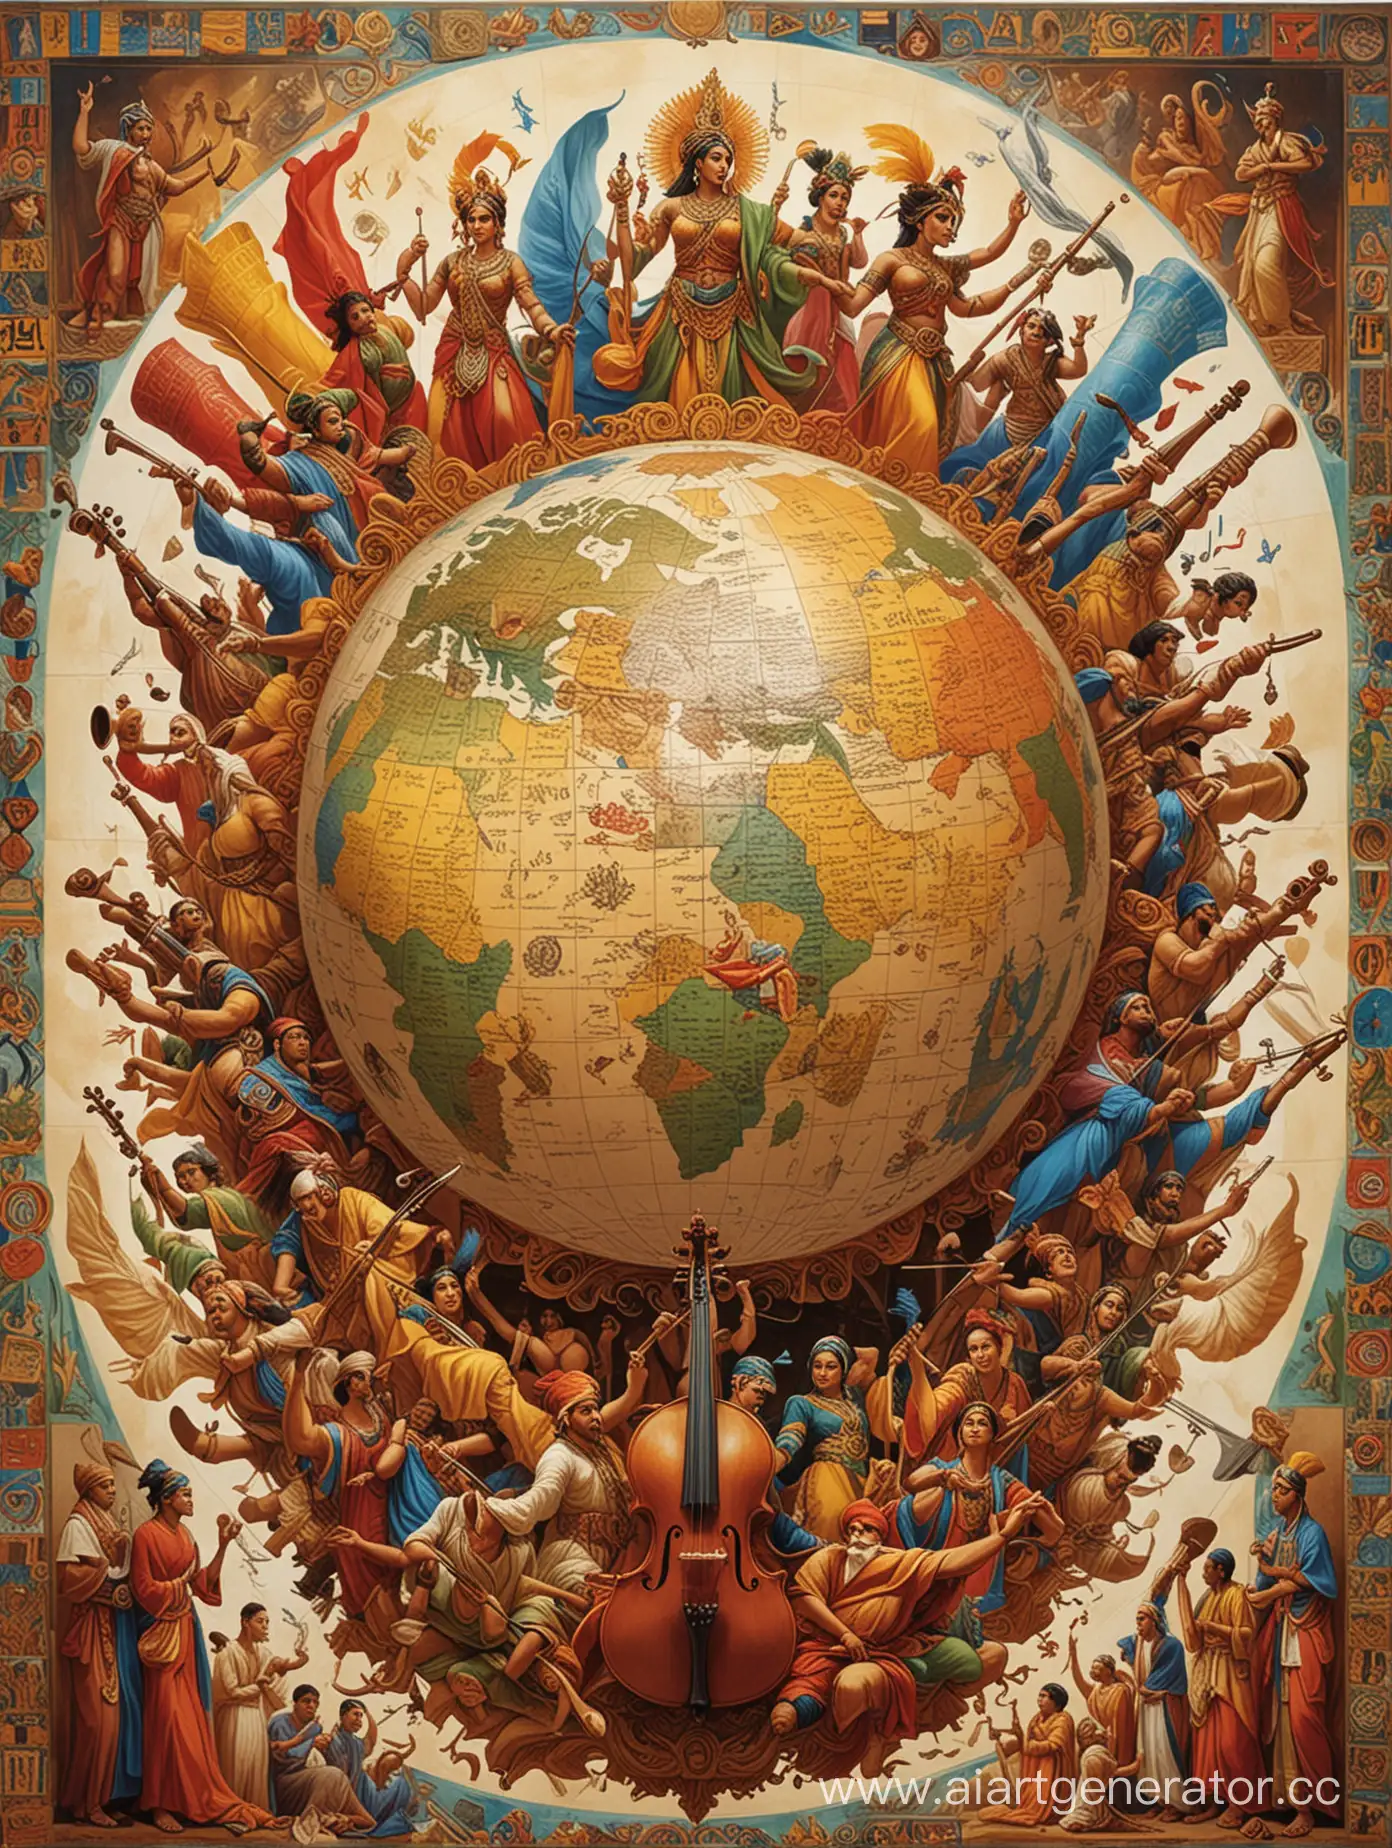 На вертикальном плакате в центре расположен крупный контур земного шара, изображенного в виде пазла. Каждый элемент пазла заполнен различными культурными символами: китайскими иероглифами, египетскими иероглифами, индийскими узорами, европейскими буквами и музыкальными нотами, африканскими узорами и т.д.

Вокруг земного шара на плакате размещены изображения разнообразных элементов культуры: книги разных форм и размеров, музыкальные инструменты (скрипка, флейта, диджериду), танцующие люди в национальных костюмах, театральные маски, картины и скульптуры разных эпох и стилей.

Вверху плаката расположен яркий слоган: "Единство в Искусстве: Культура против Террора". Под слоганом может быть добавлено краткое пояснение или цитата, подчеркивающая важность многообразия культурного наследия для создания гармоничного мира.

Цветовая гамма плаката яркая и насыщенная, используются основные цвета радуги (красный, жёлтый, синий, зелёный) для подчеркивания радости и оптимизма, а также символического значения единства многообразия.